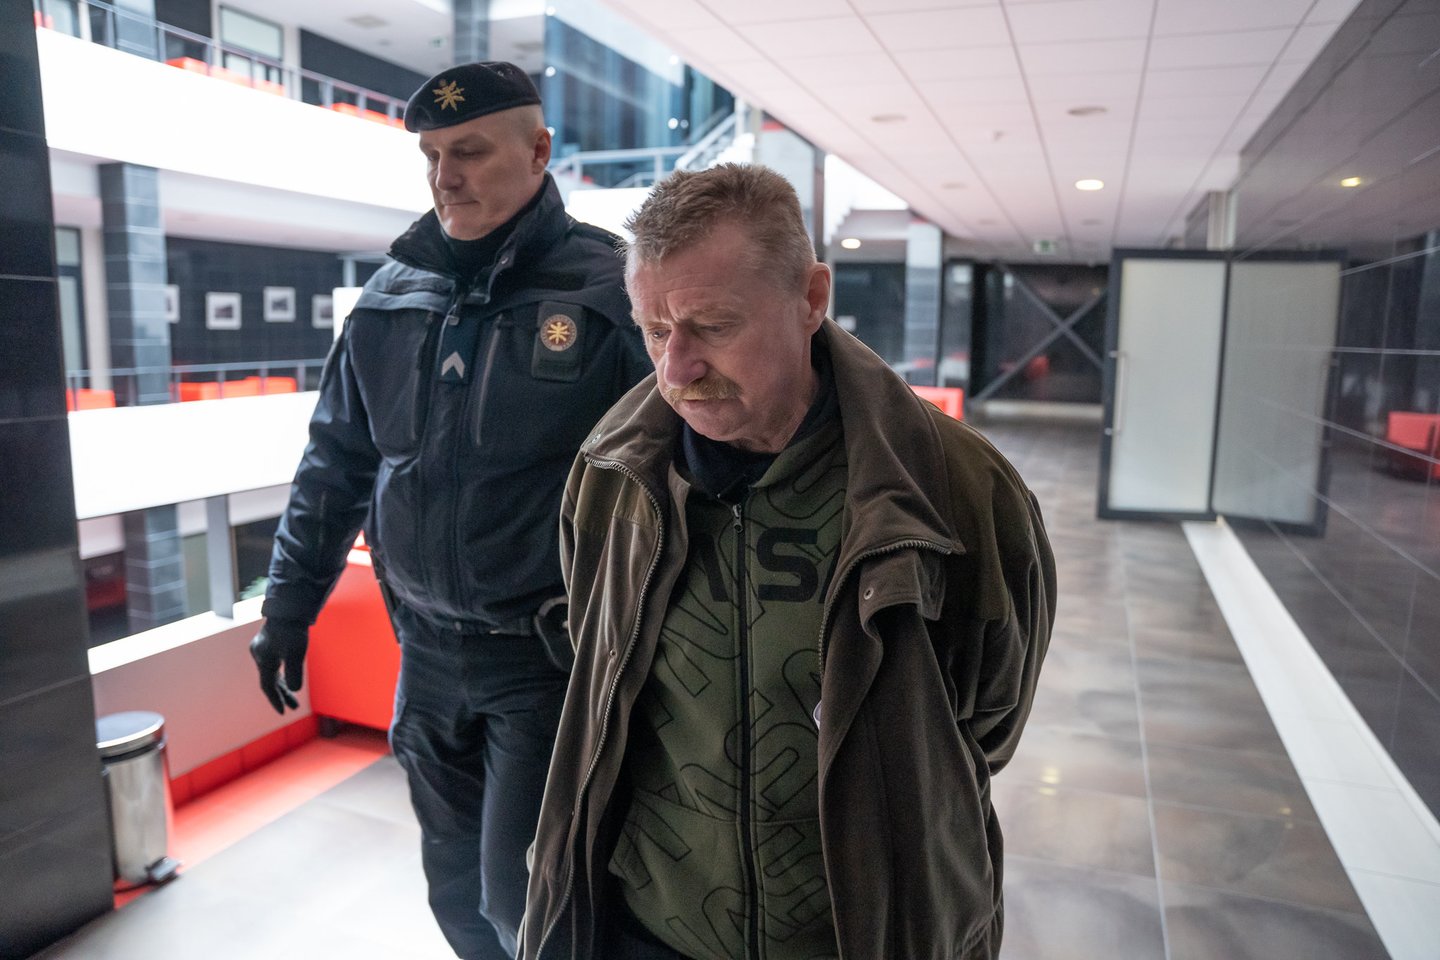  Kauno apygardos teismas už moters nužudymą prieniškiui V. Tamošiūnui skyrė 13 metų kalėjimo. <br> R. Vilkelio nuotr. 